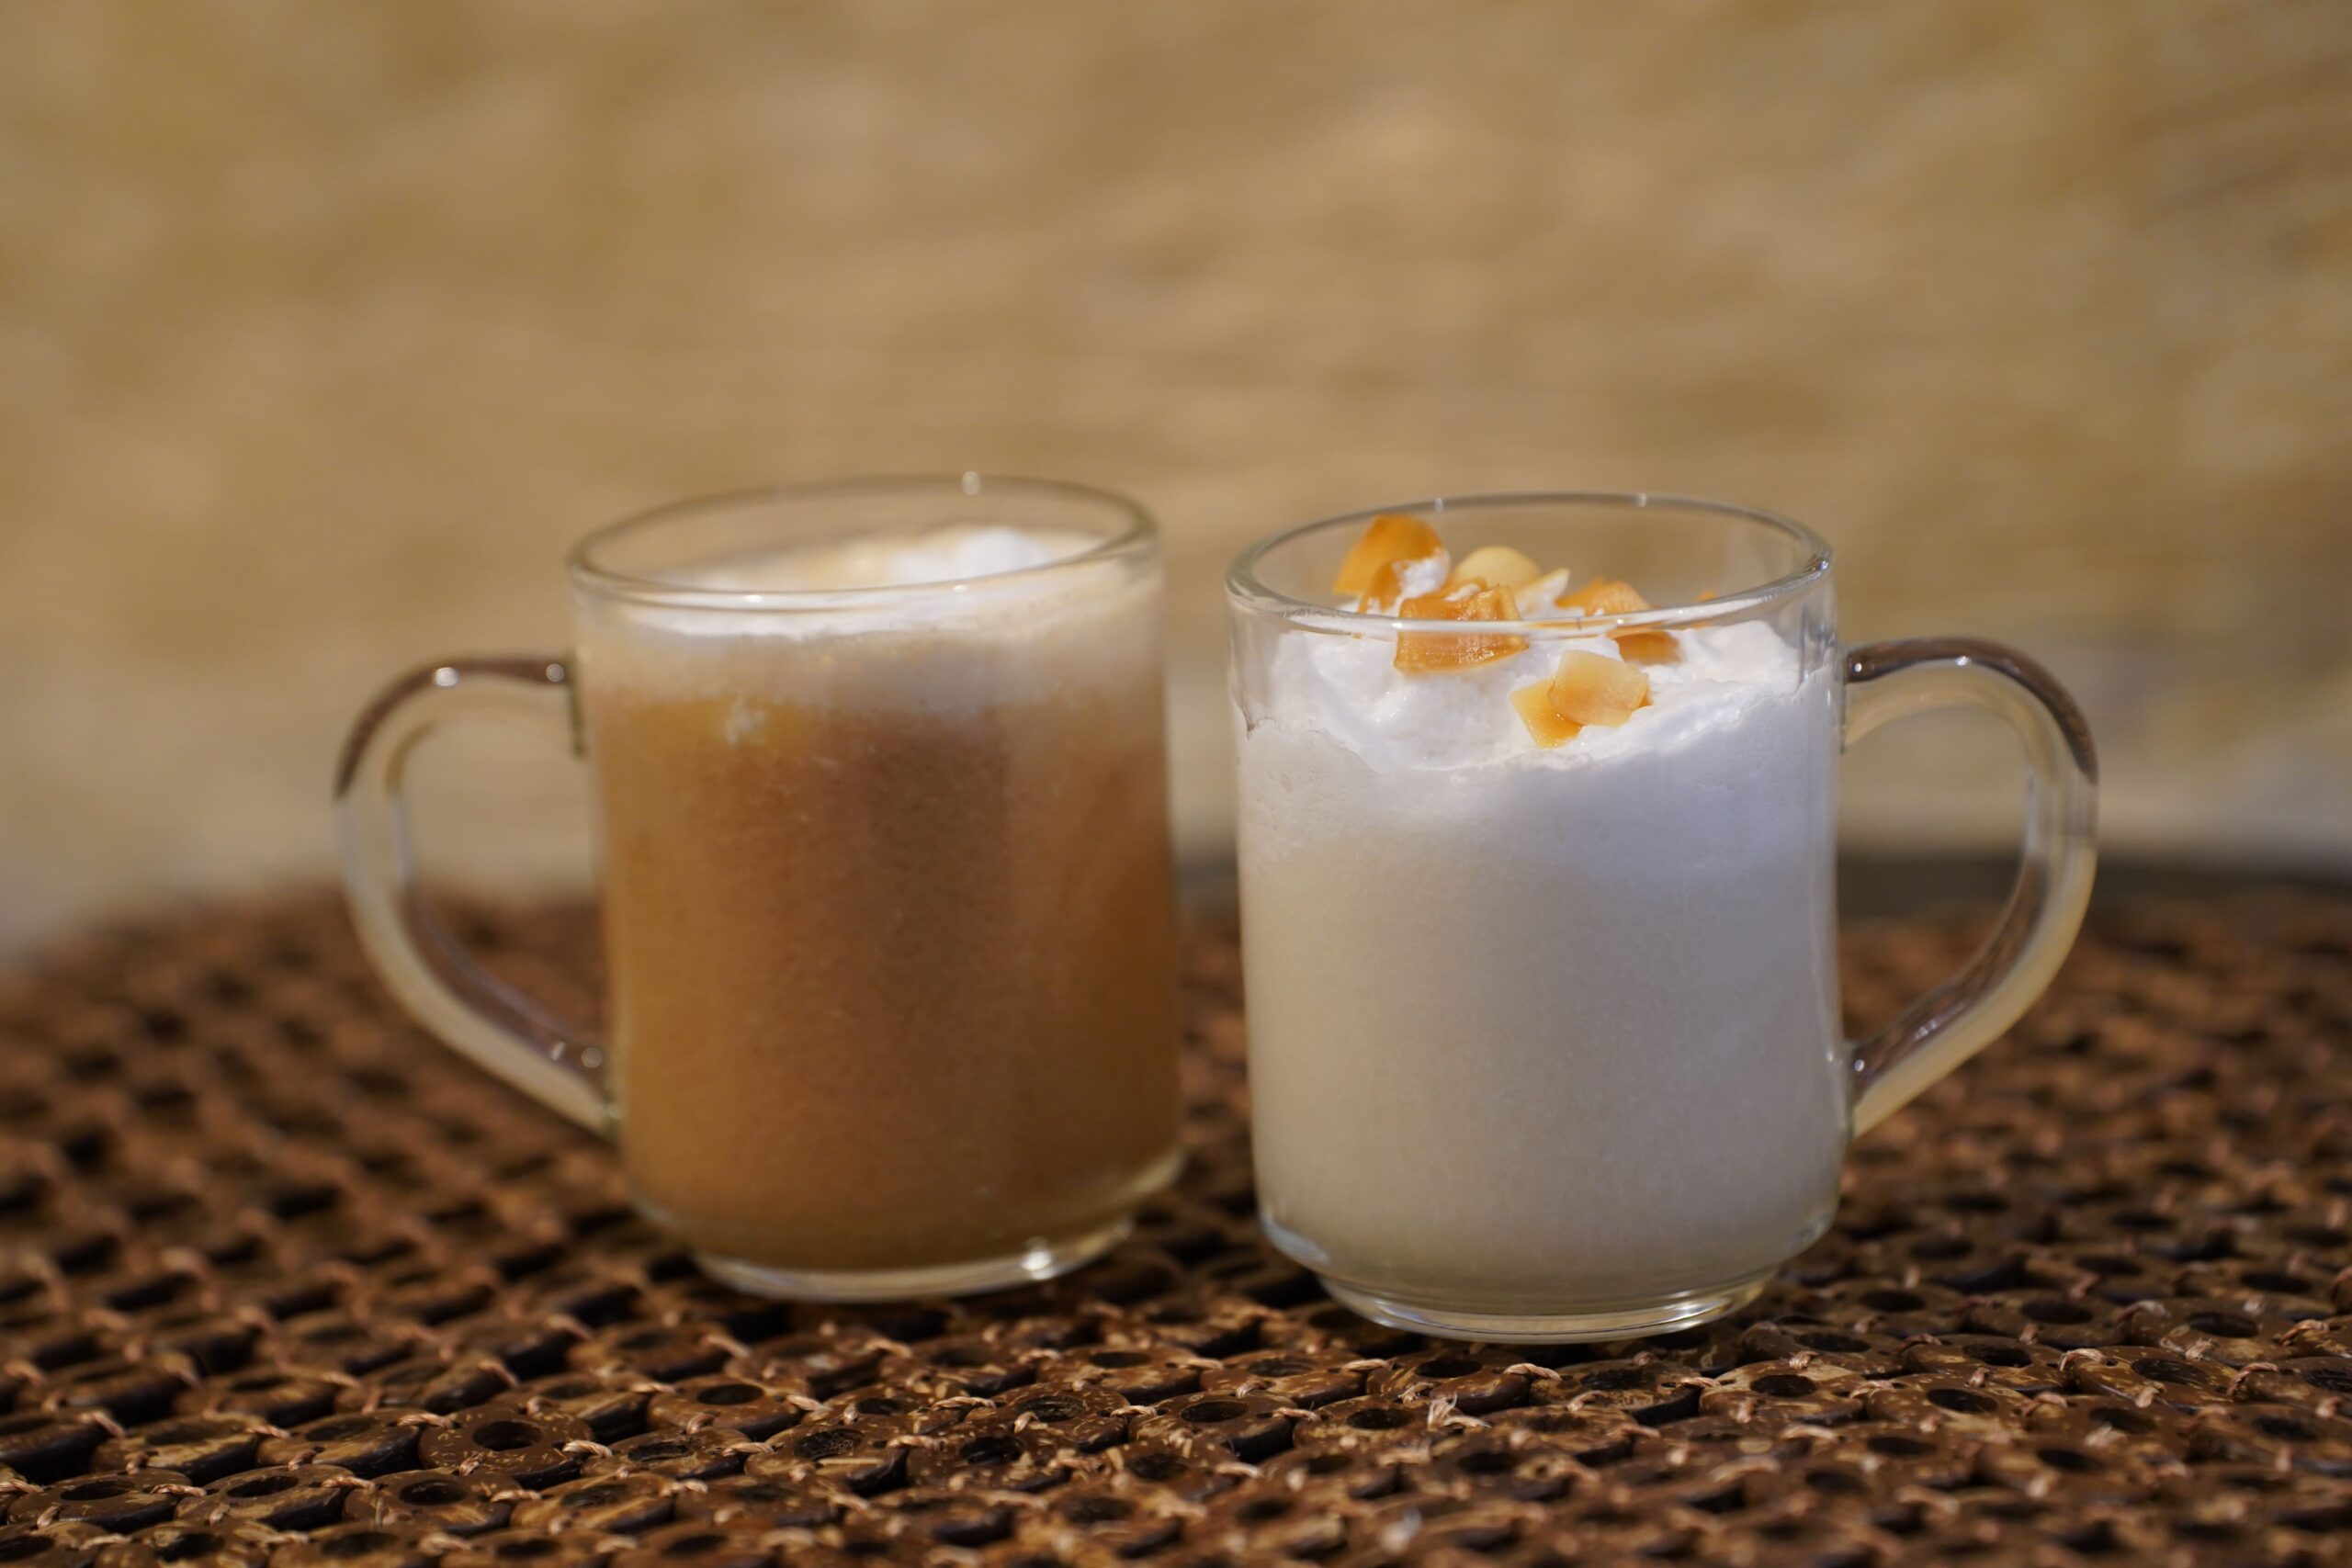 写真右：ホットココナッツミルク
写真左：プレミアムココナッツミルクティー